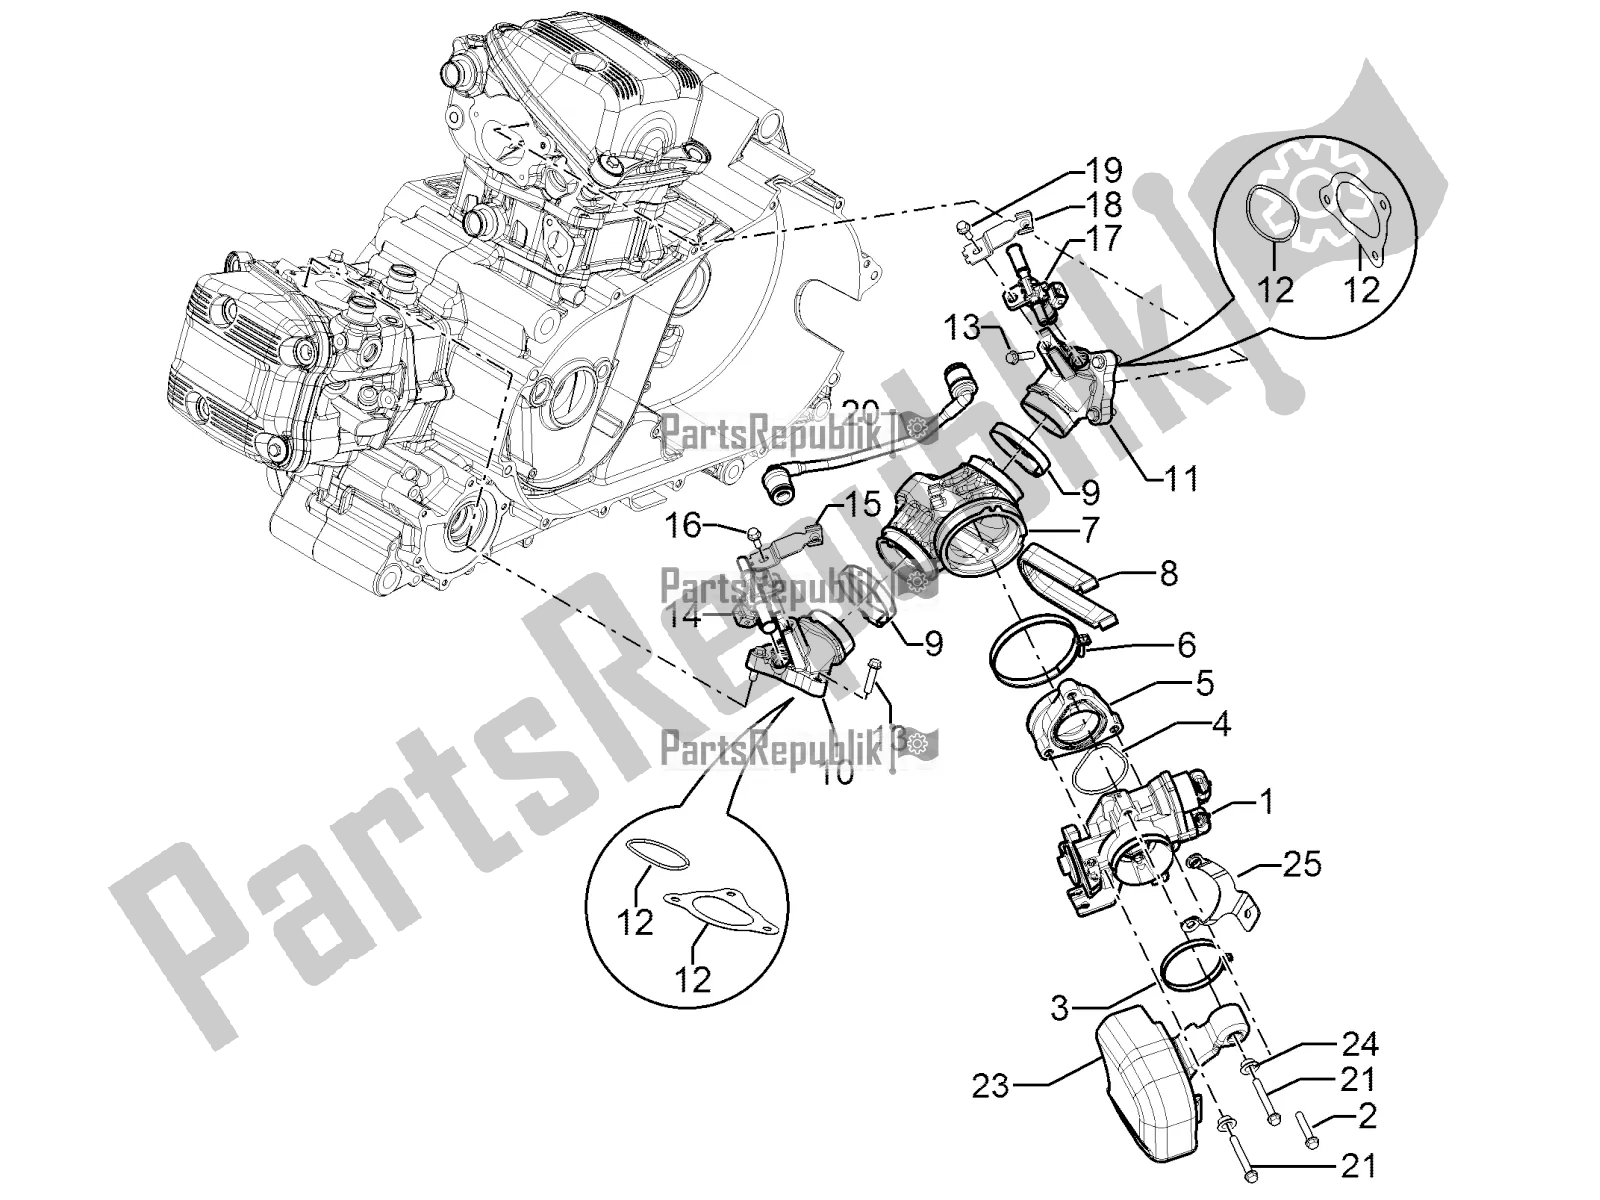 Toutes les pièces pour le Throttle Body - Injector - Induction Joint du Aprilia SRV 850 2019